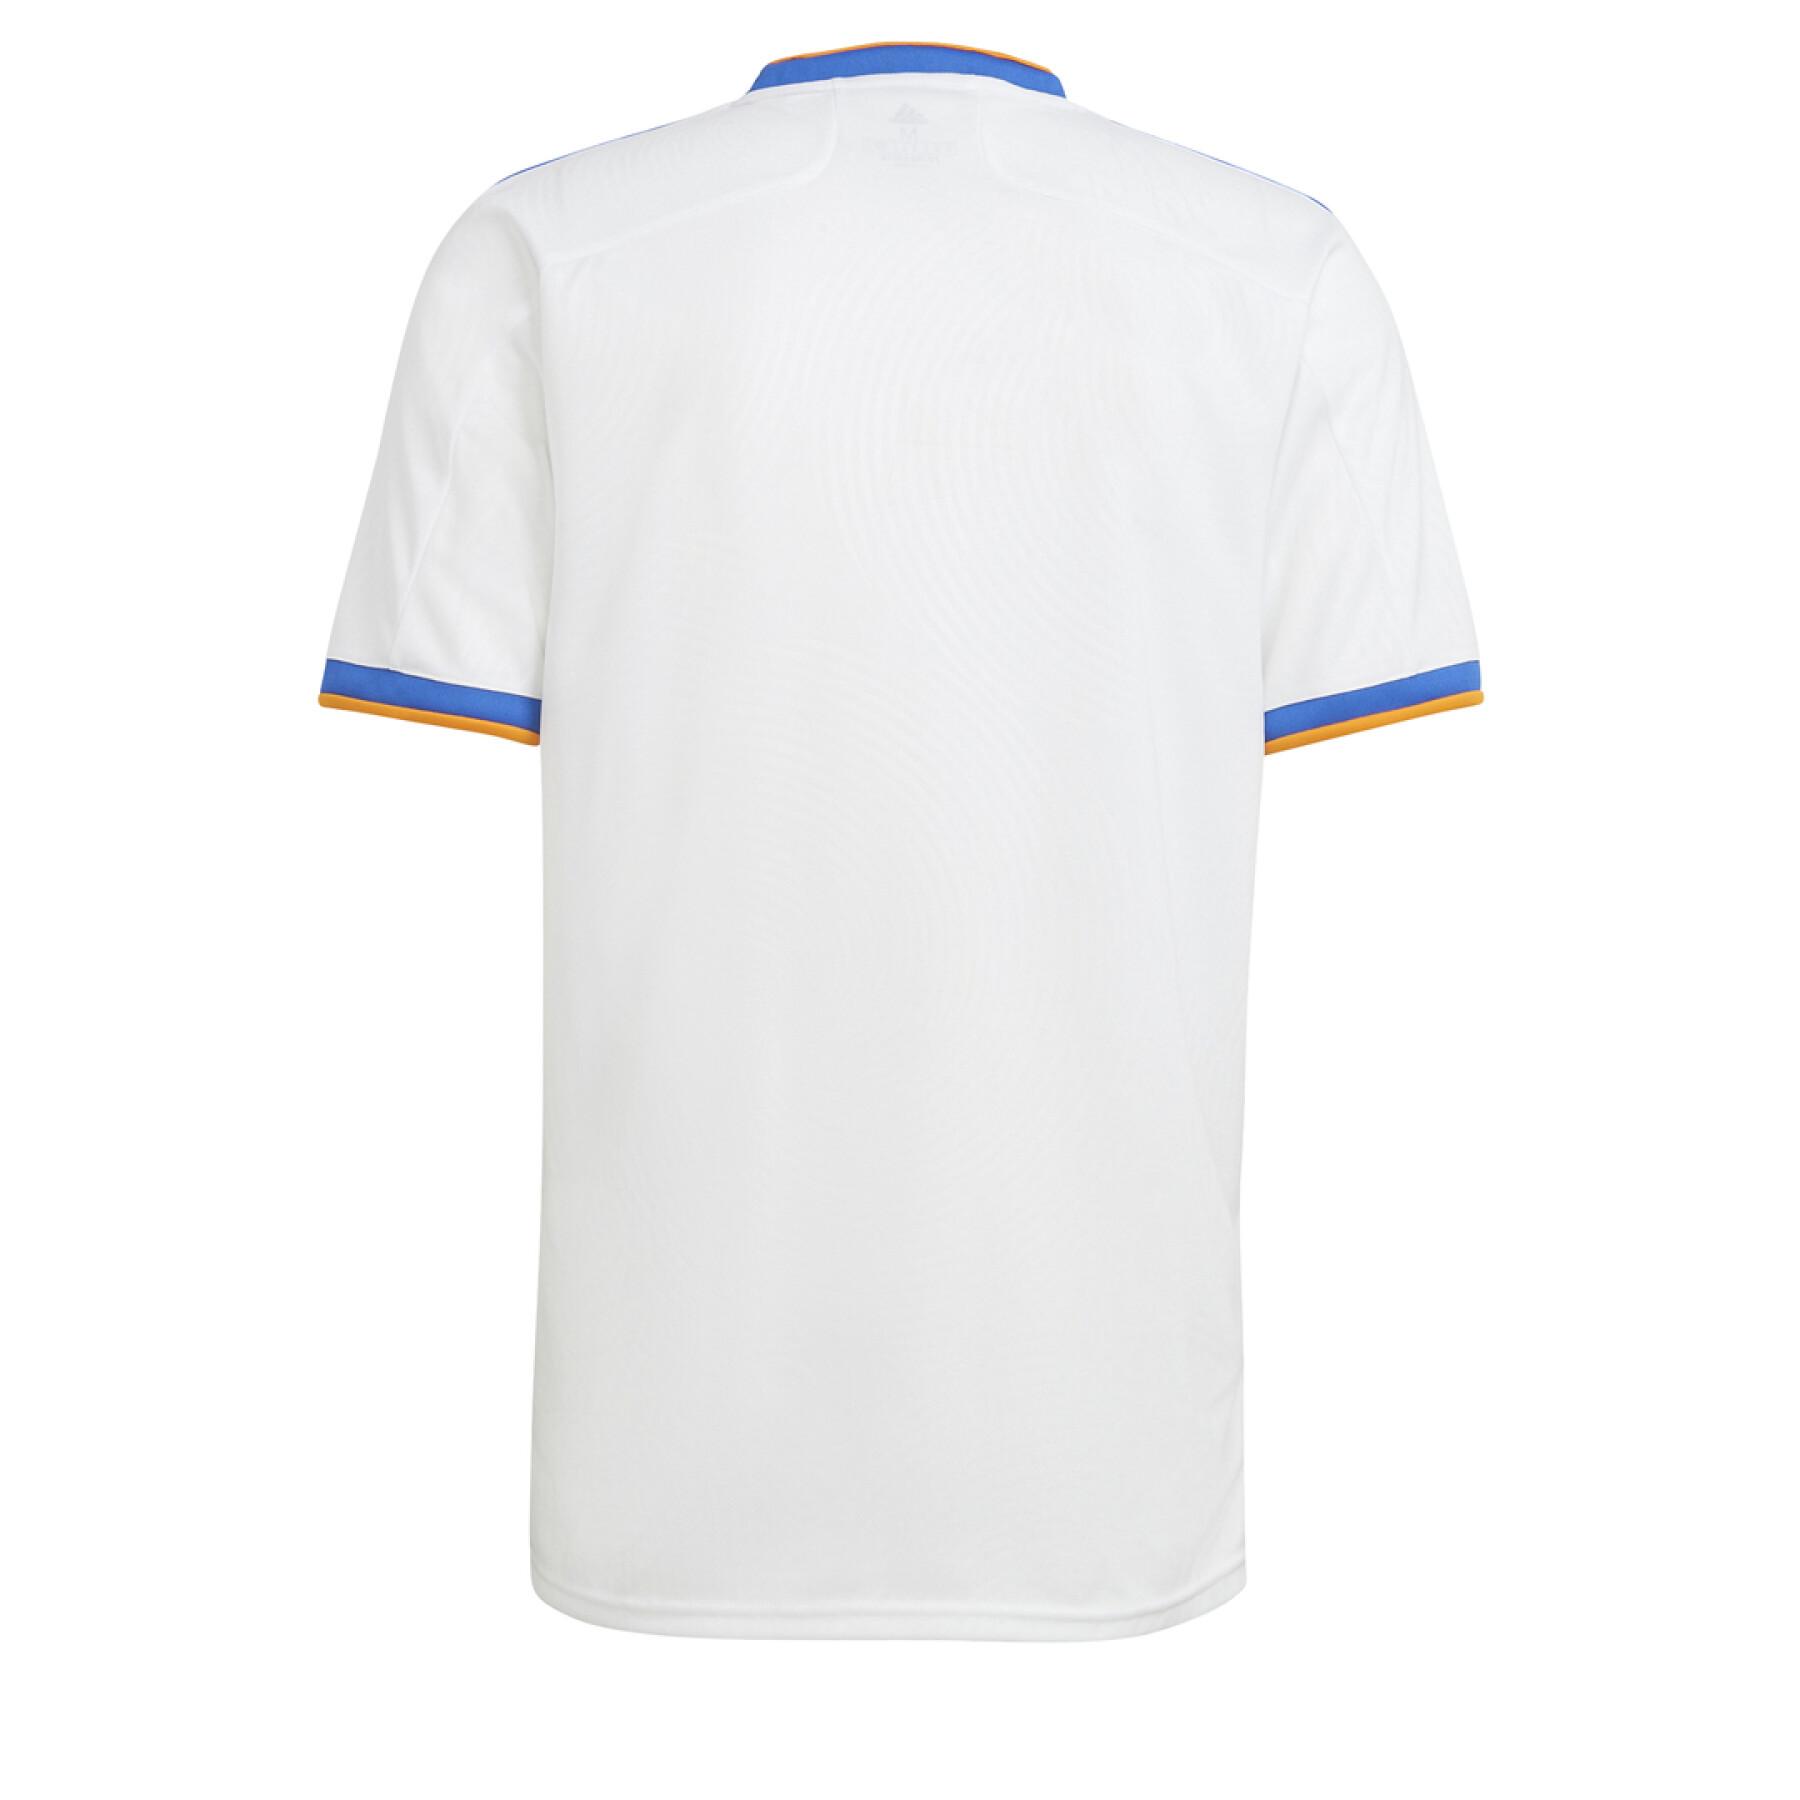 Camiseta primera equipación Real Madrid 2021/22